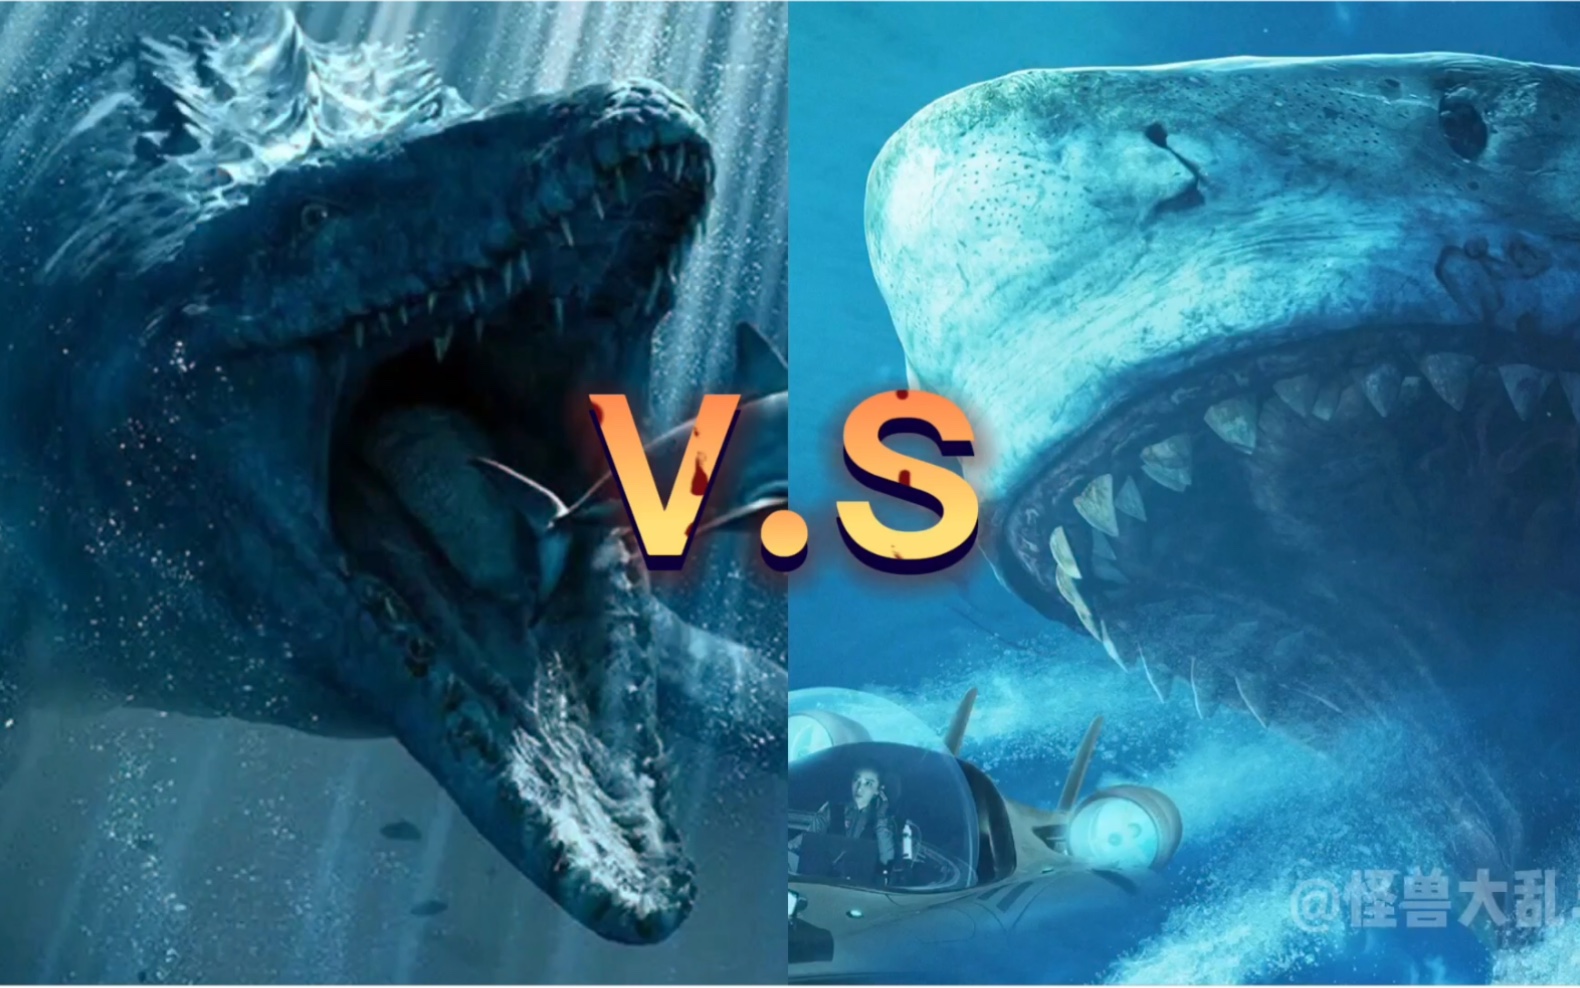 海洋争霸战:侏罗纪世界沧龙vs巨齿鲨